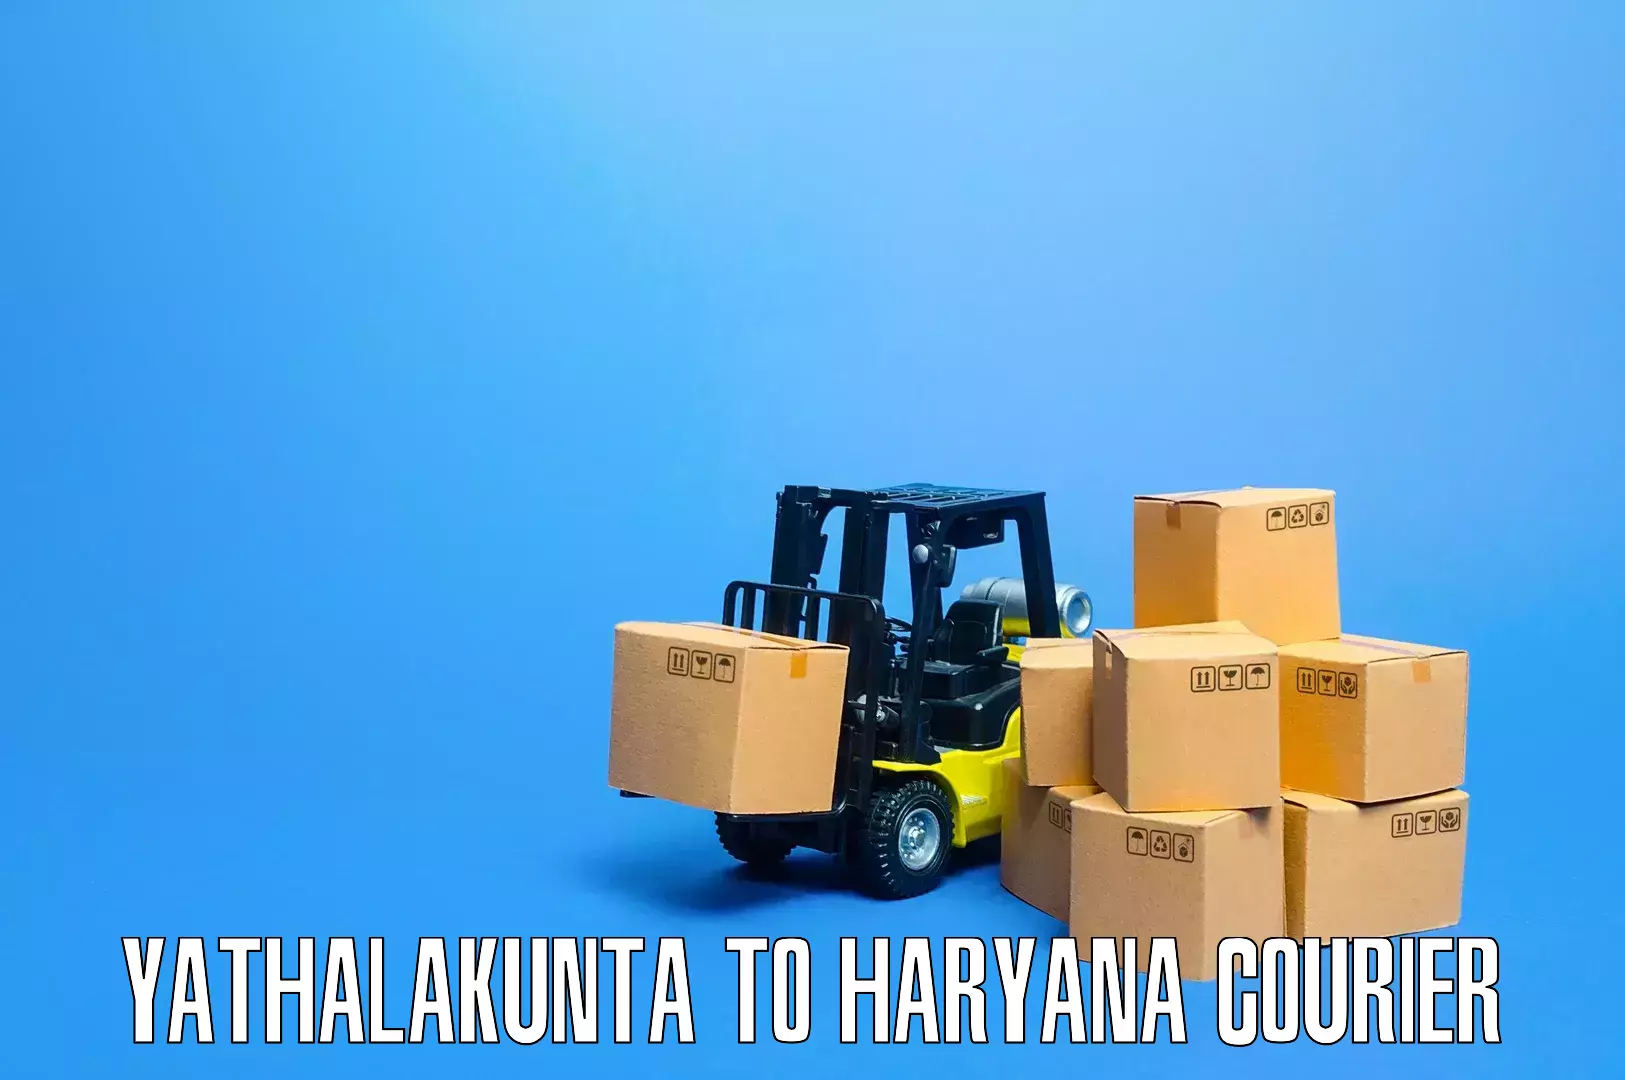 Furniture transport solutions Yathalakunta to Loharu